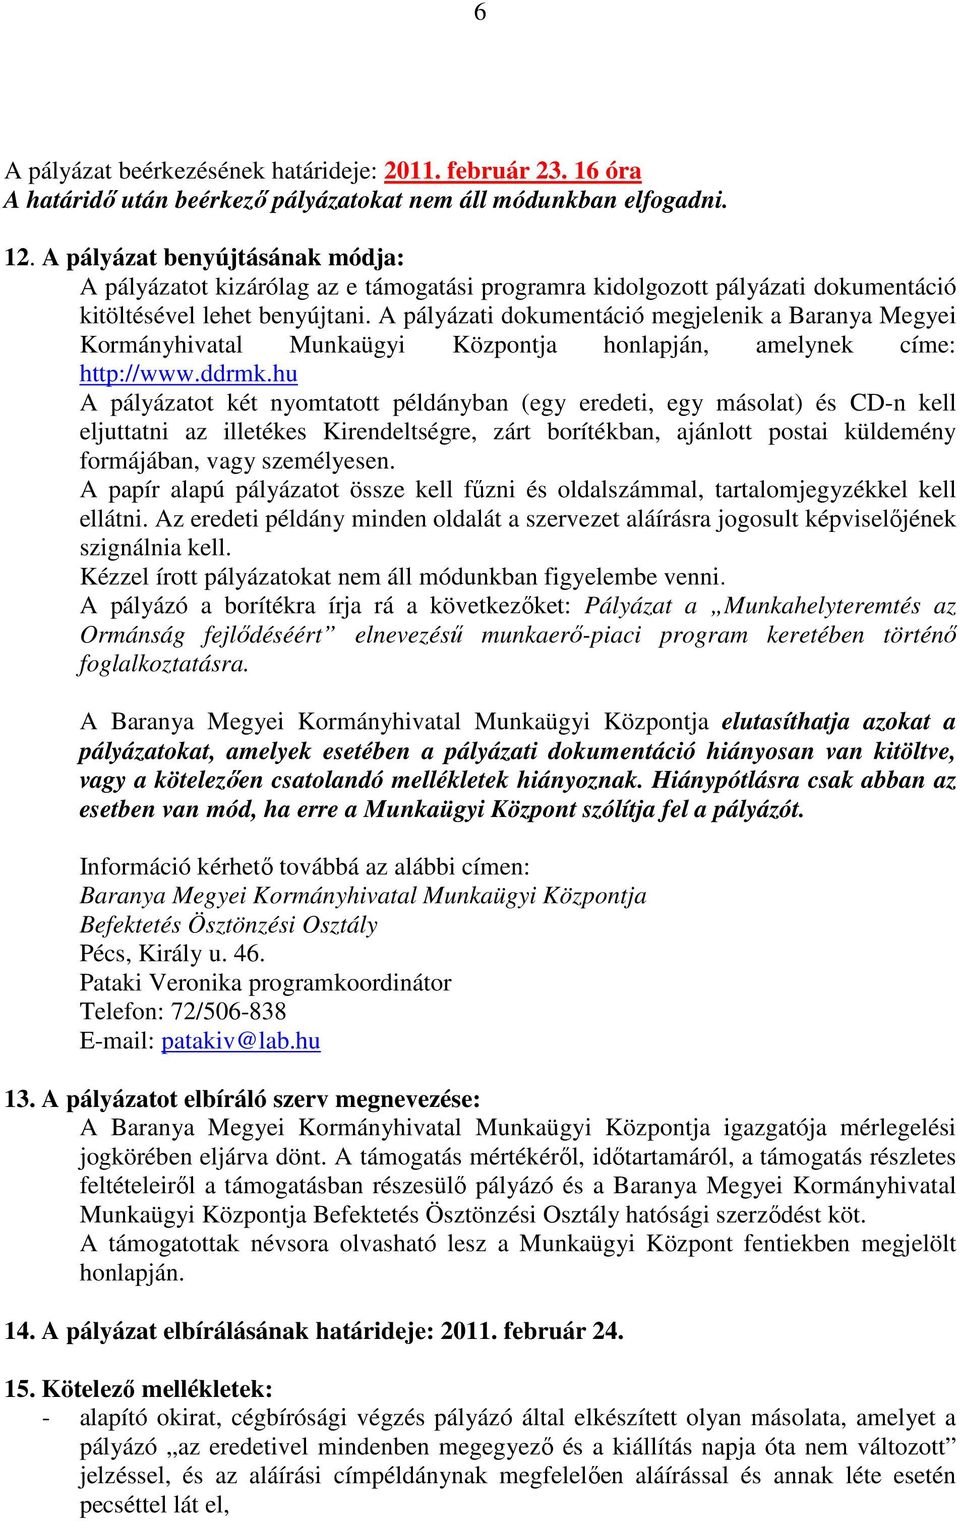 A pályázati dokumentáció megjelenik a Baranya Megyei Kormányhivatal Munkaügyi Központja honlapján, amelynek címe: http://www.ddrmk.